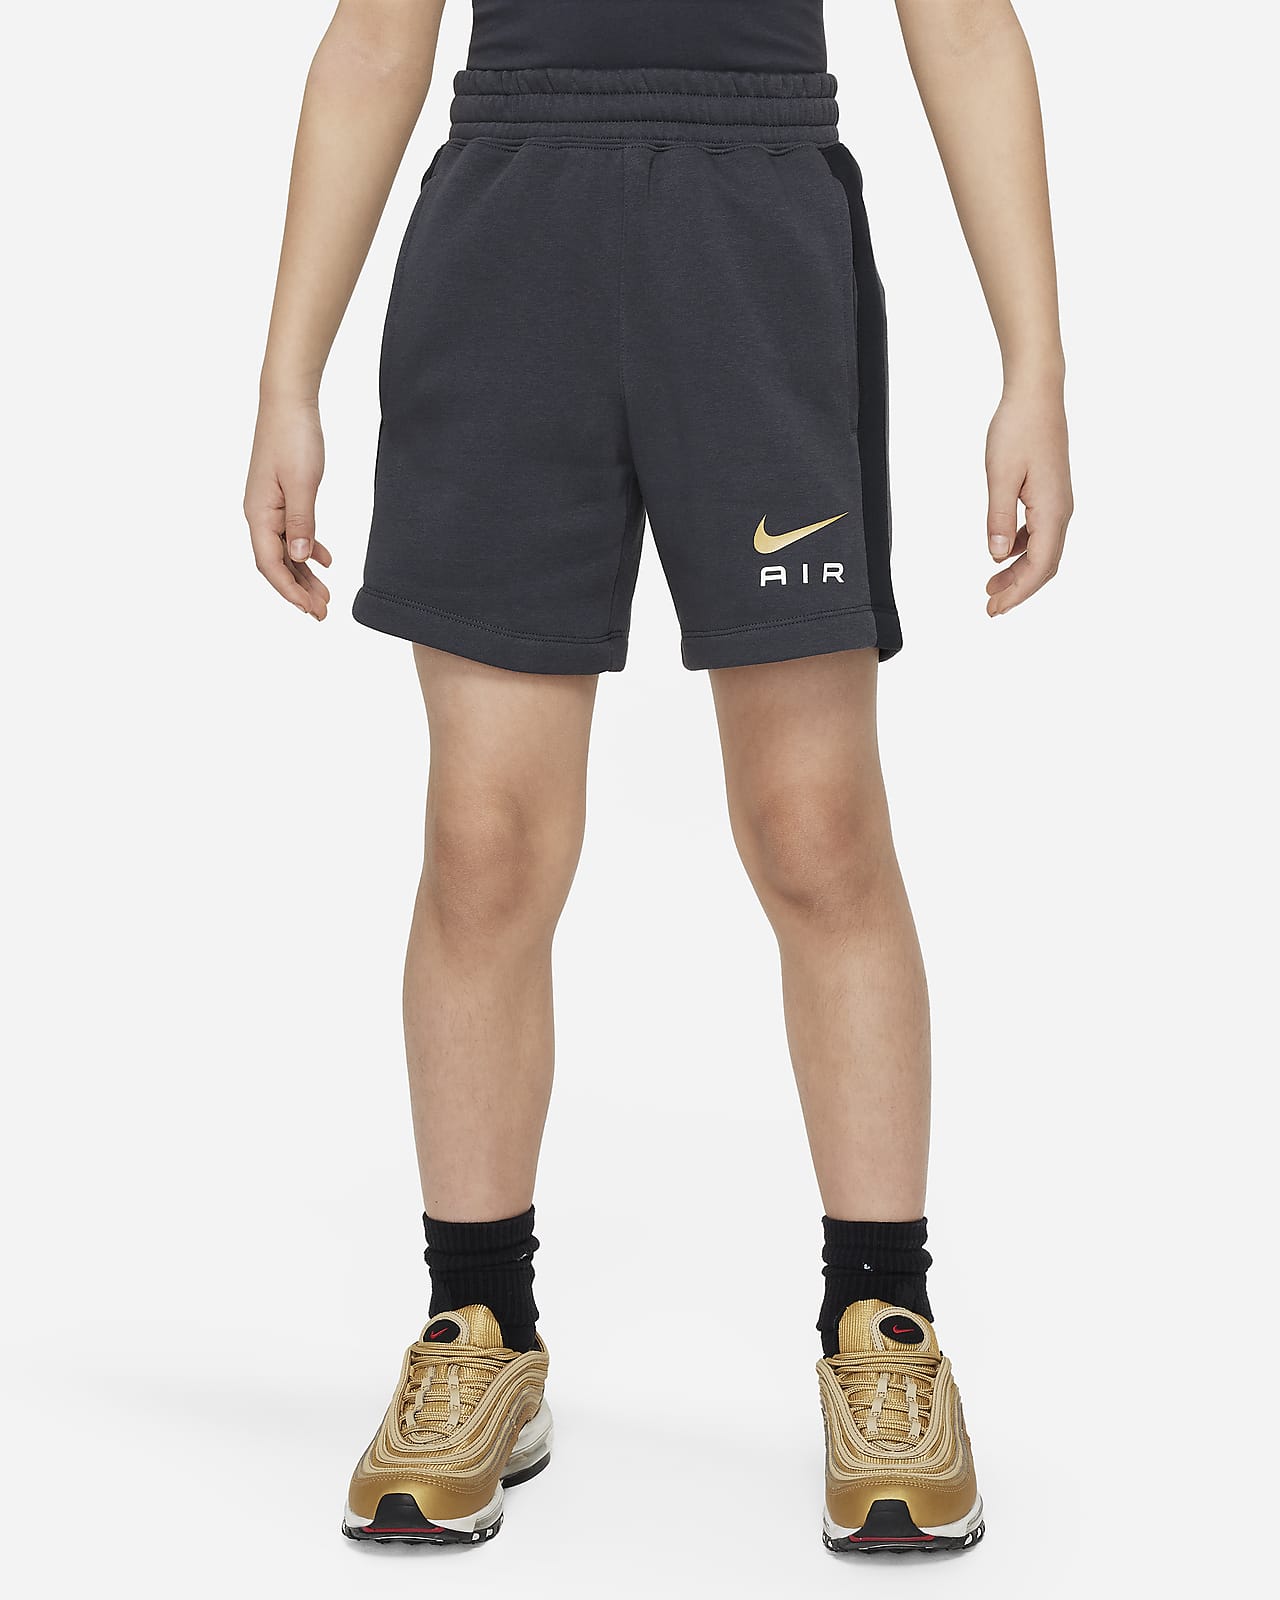 Nike Air Pantalons curts de teixit Fleece - Nen